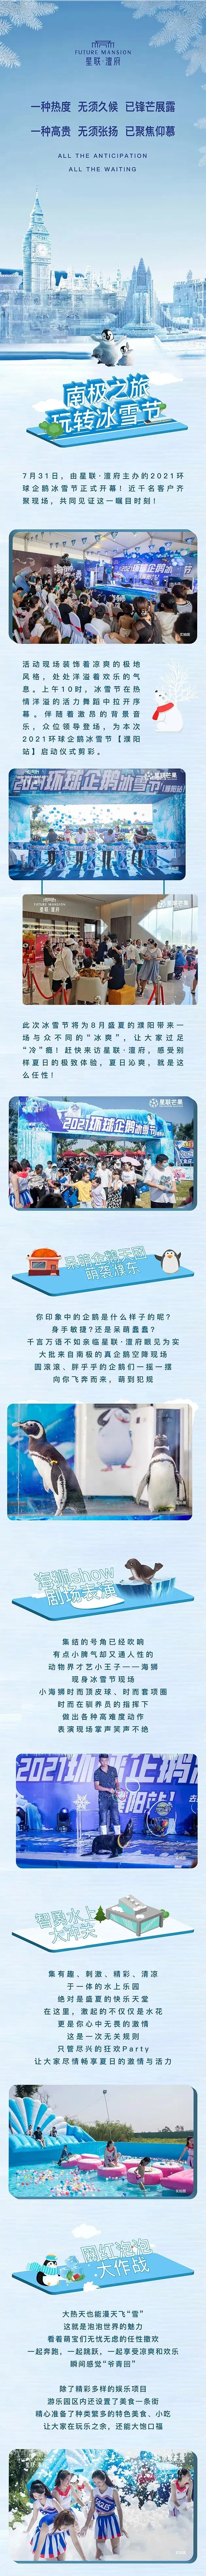 全城瞩目 | 星联·澶府2021环球企鹅冰雪节正式启幕!